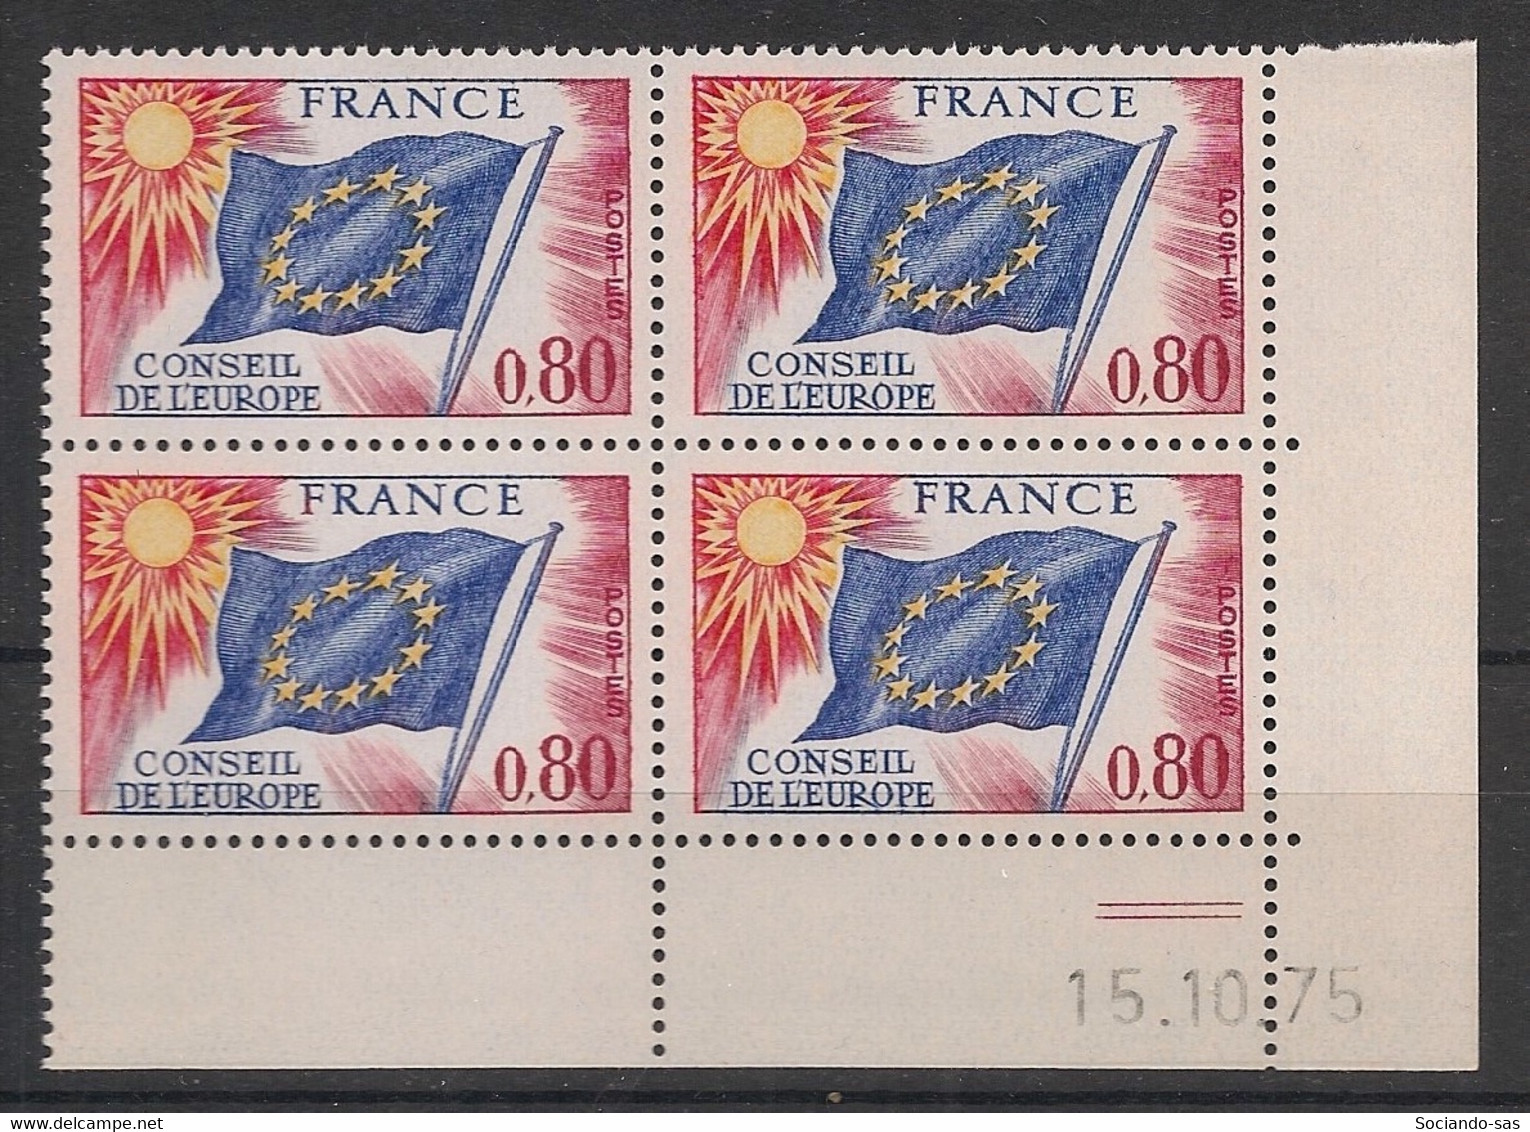 France - 1975 - Service N°Yv. 47 - Bloc De 4 Coin Daté - Neuf Luxe ** / MNH / Postfrisch - Servicio